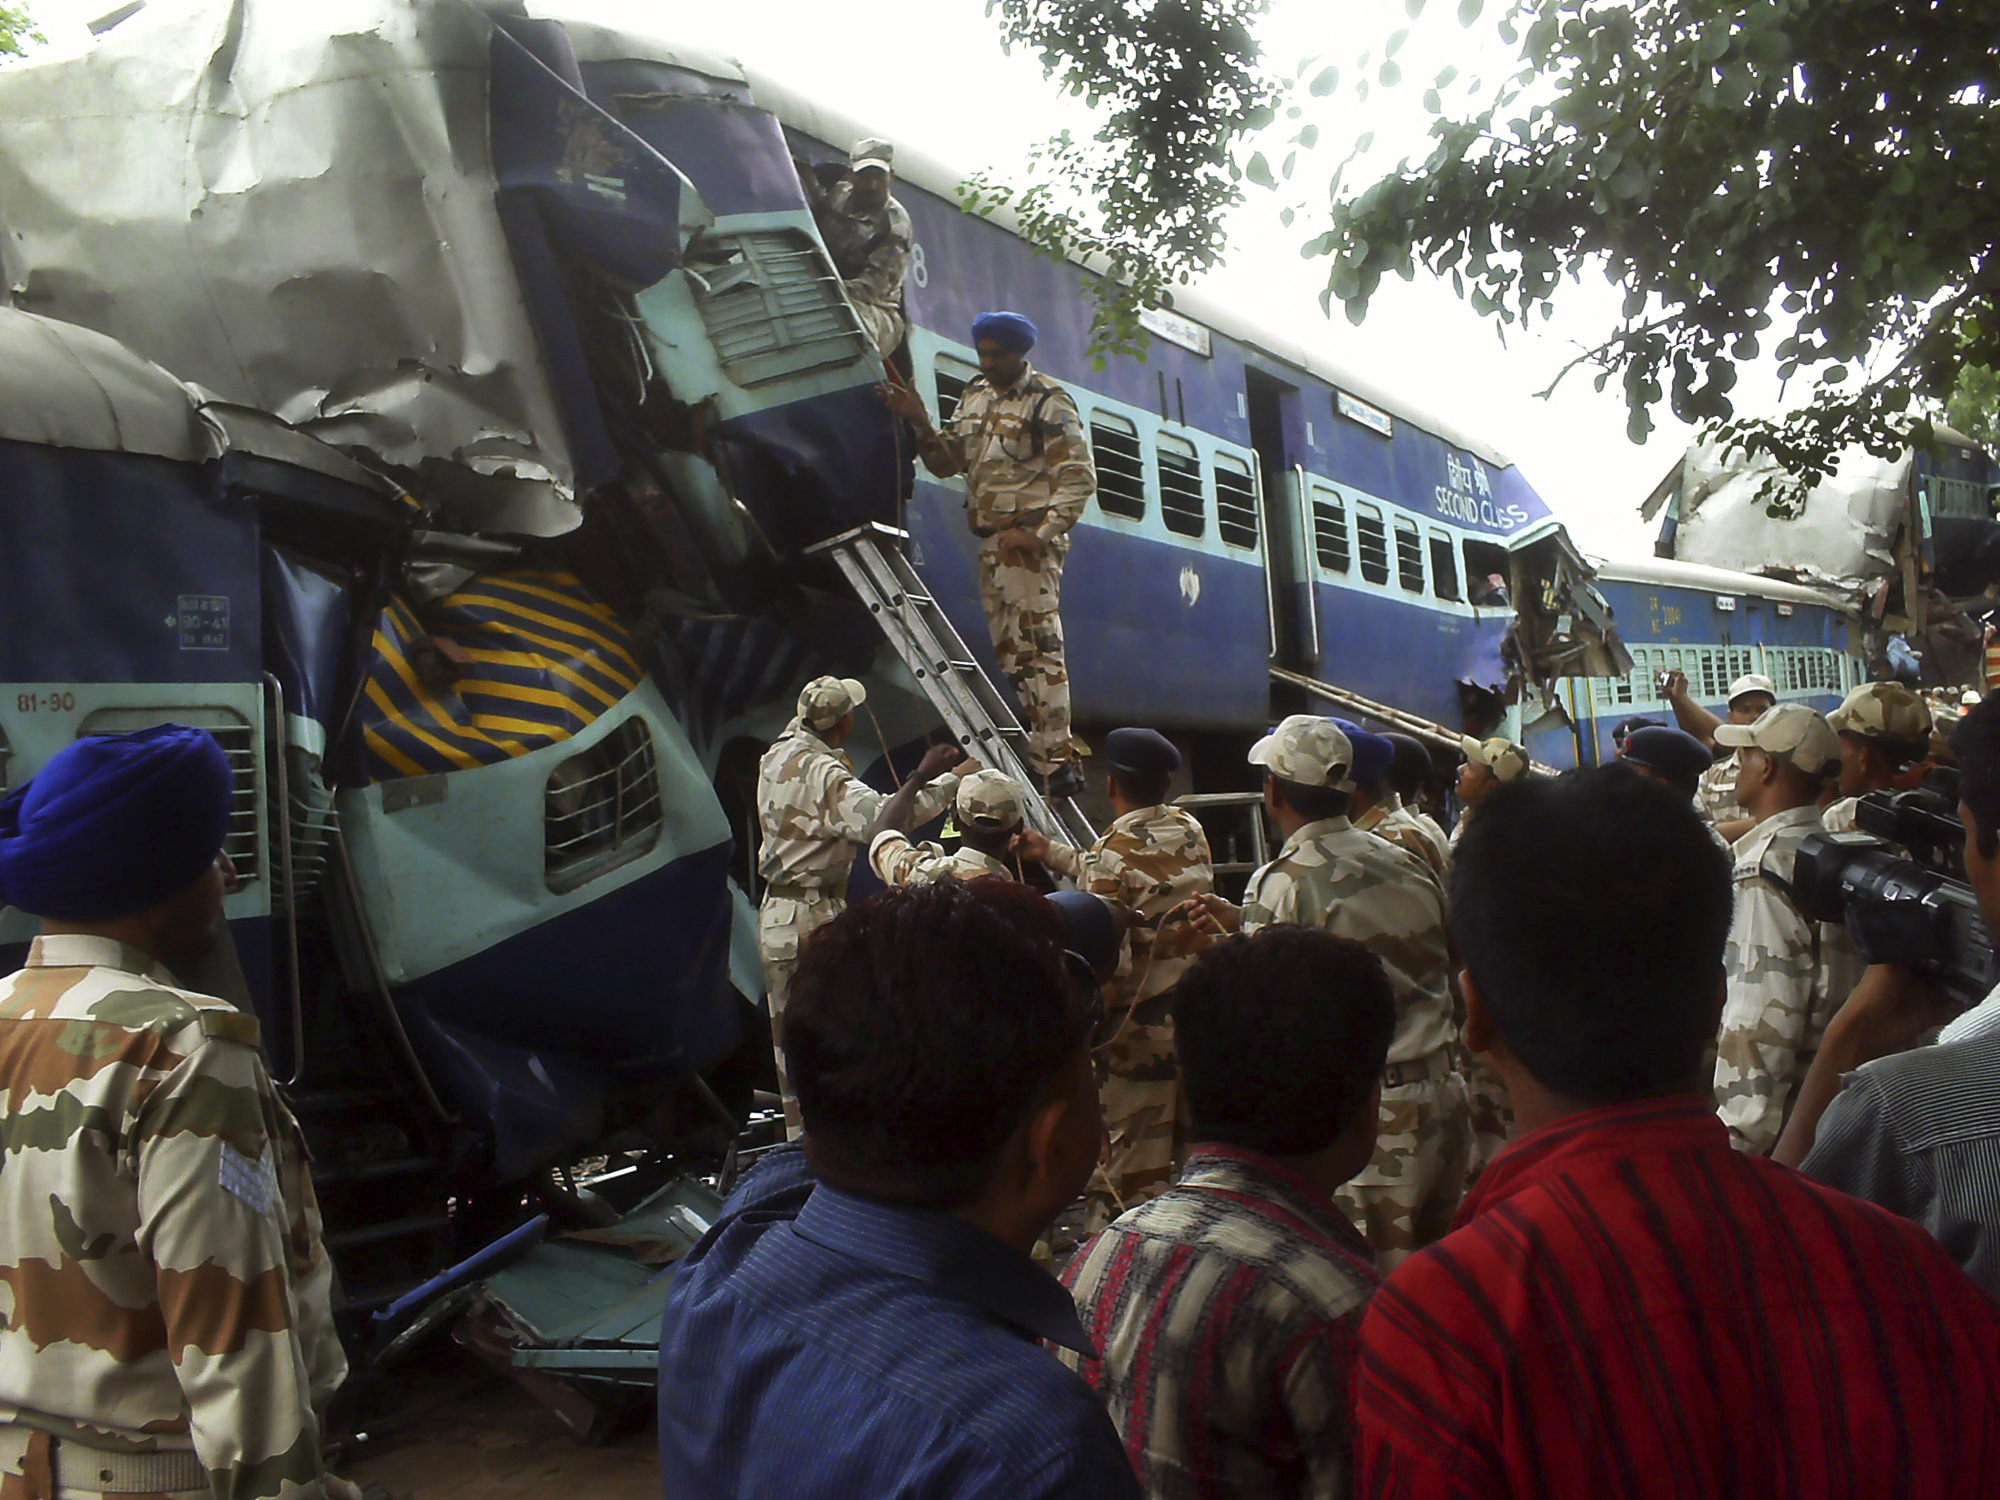 Olycka, Tågtrafiken, Indien